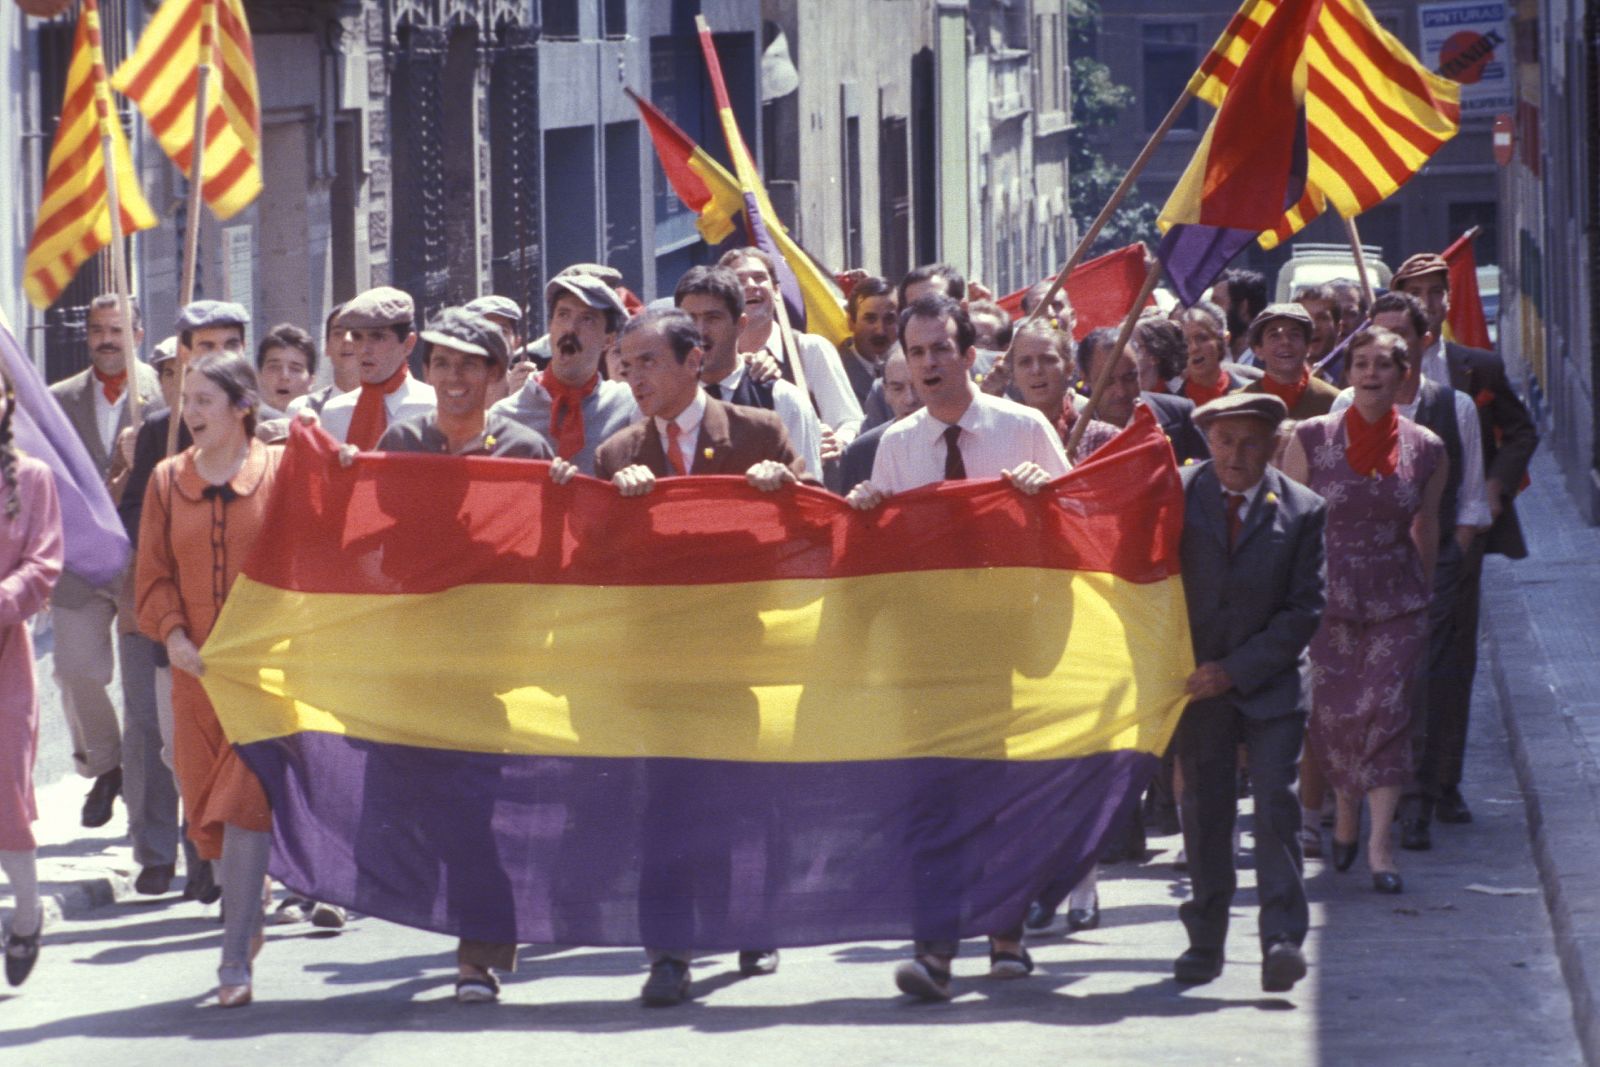 La sèrie "La plaça del Diamant" retrata la societat catalana des de 1928 fins a la posguerra